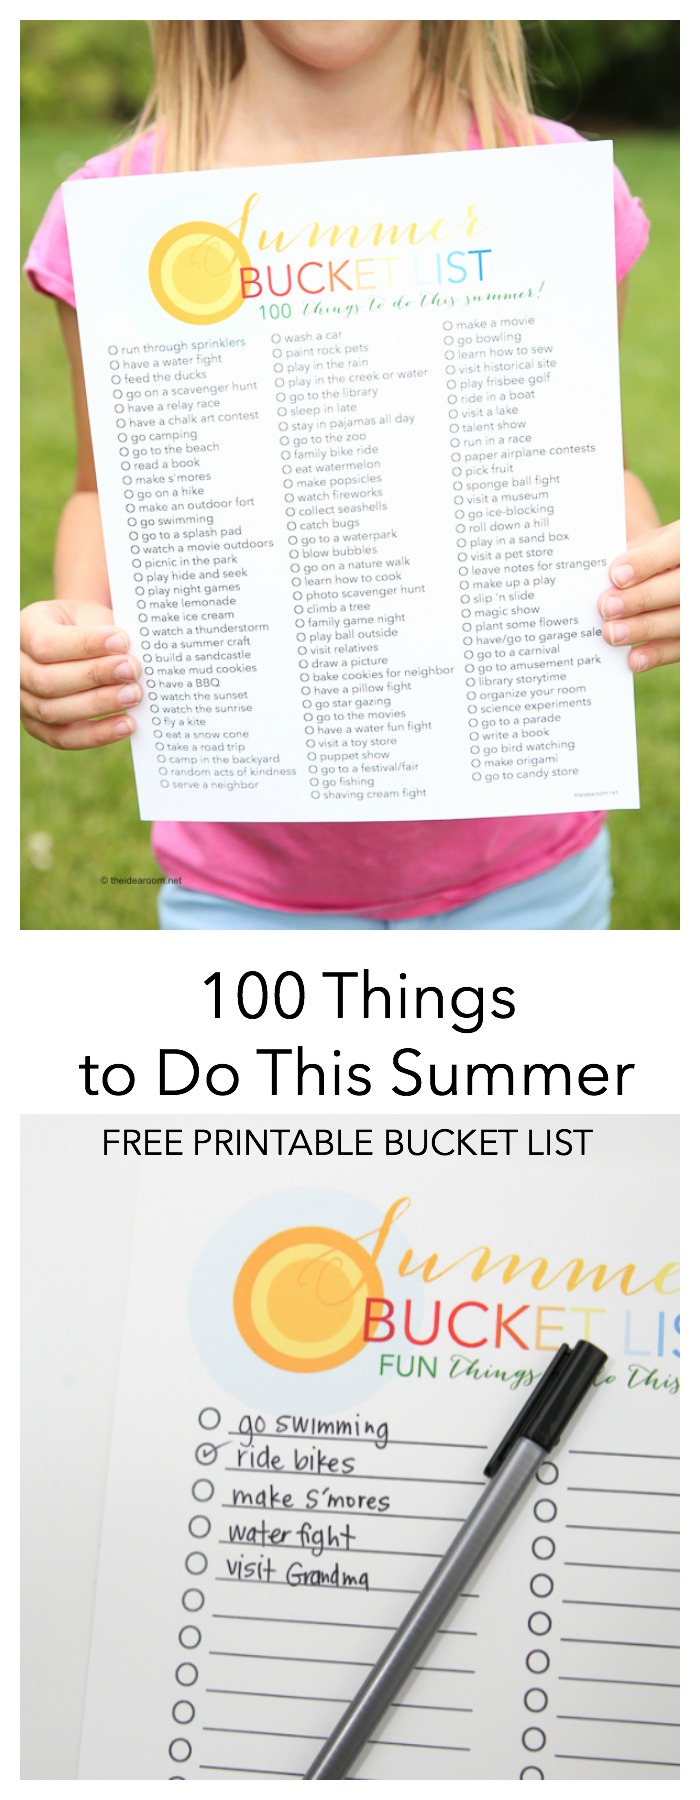 Favorite-Things-Giveaway-2017-Gift-Ideas-Summer-Bucketlist